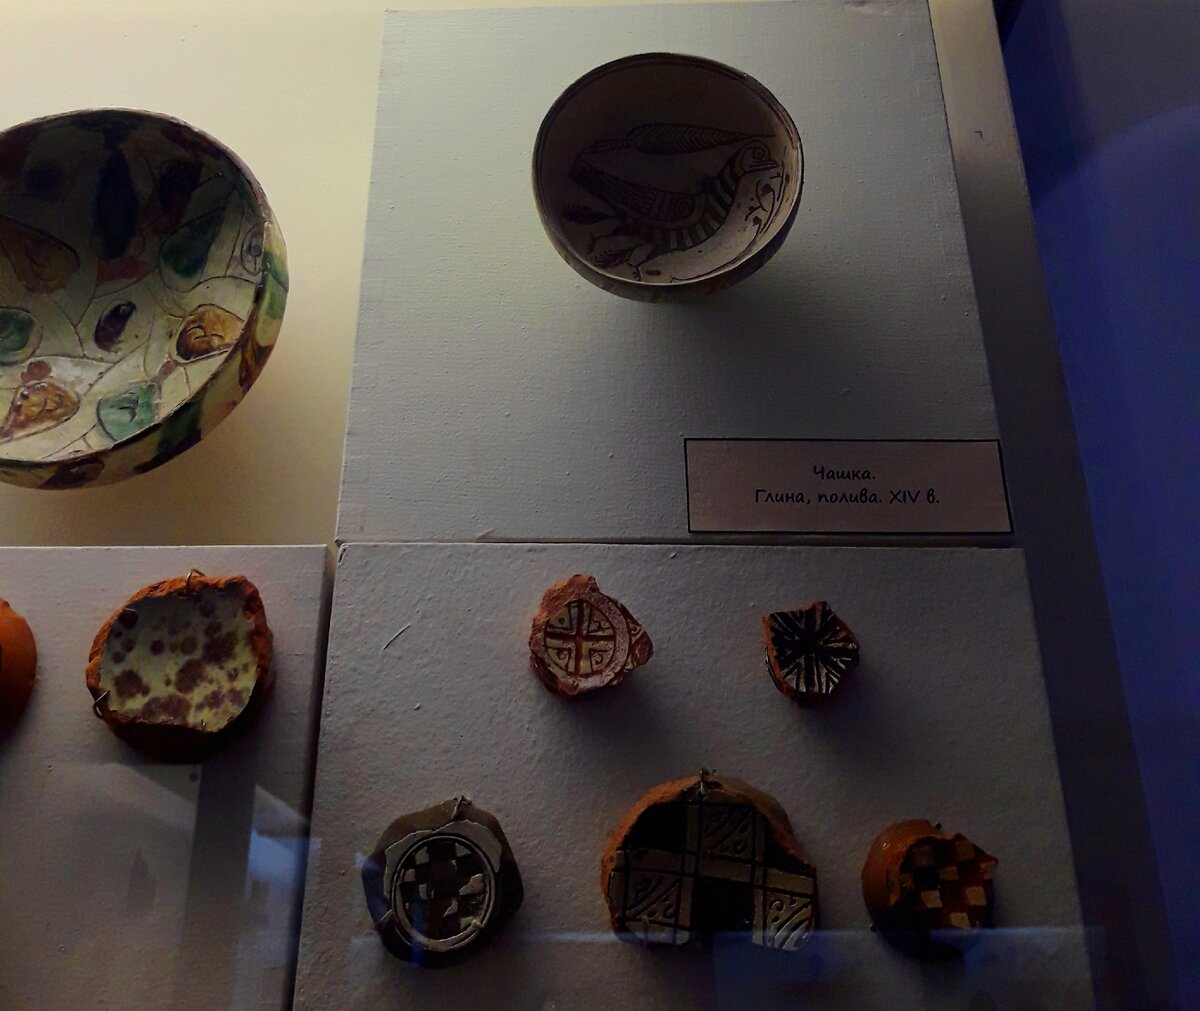 Архелогические находки в музее Херсонеса (Крым): красивое стекло со смальтой и древние монеты античного времени